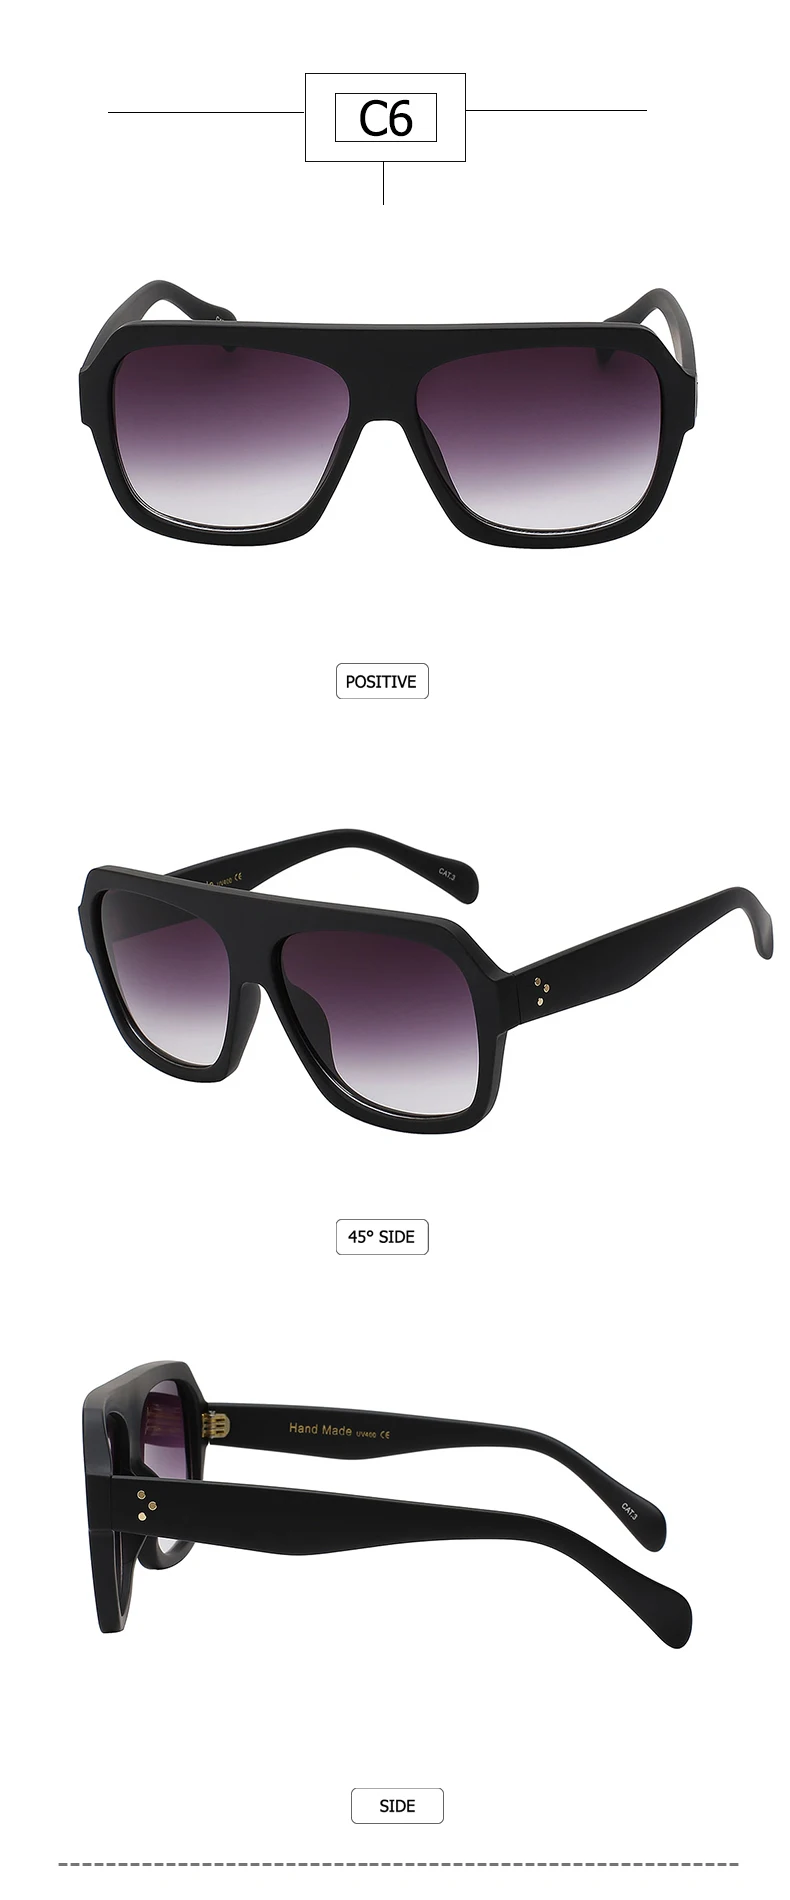 Max glasiz брендовые дизайнерские женские солнцезащитные очки градиентные линзы Солнцезащитные очки Мужские квадратные оправы оттенки женские очки в стиле унисекс